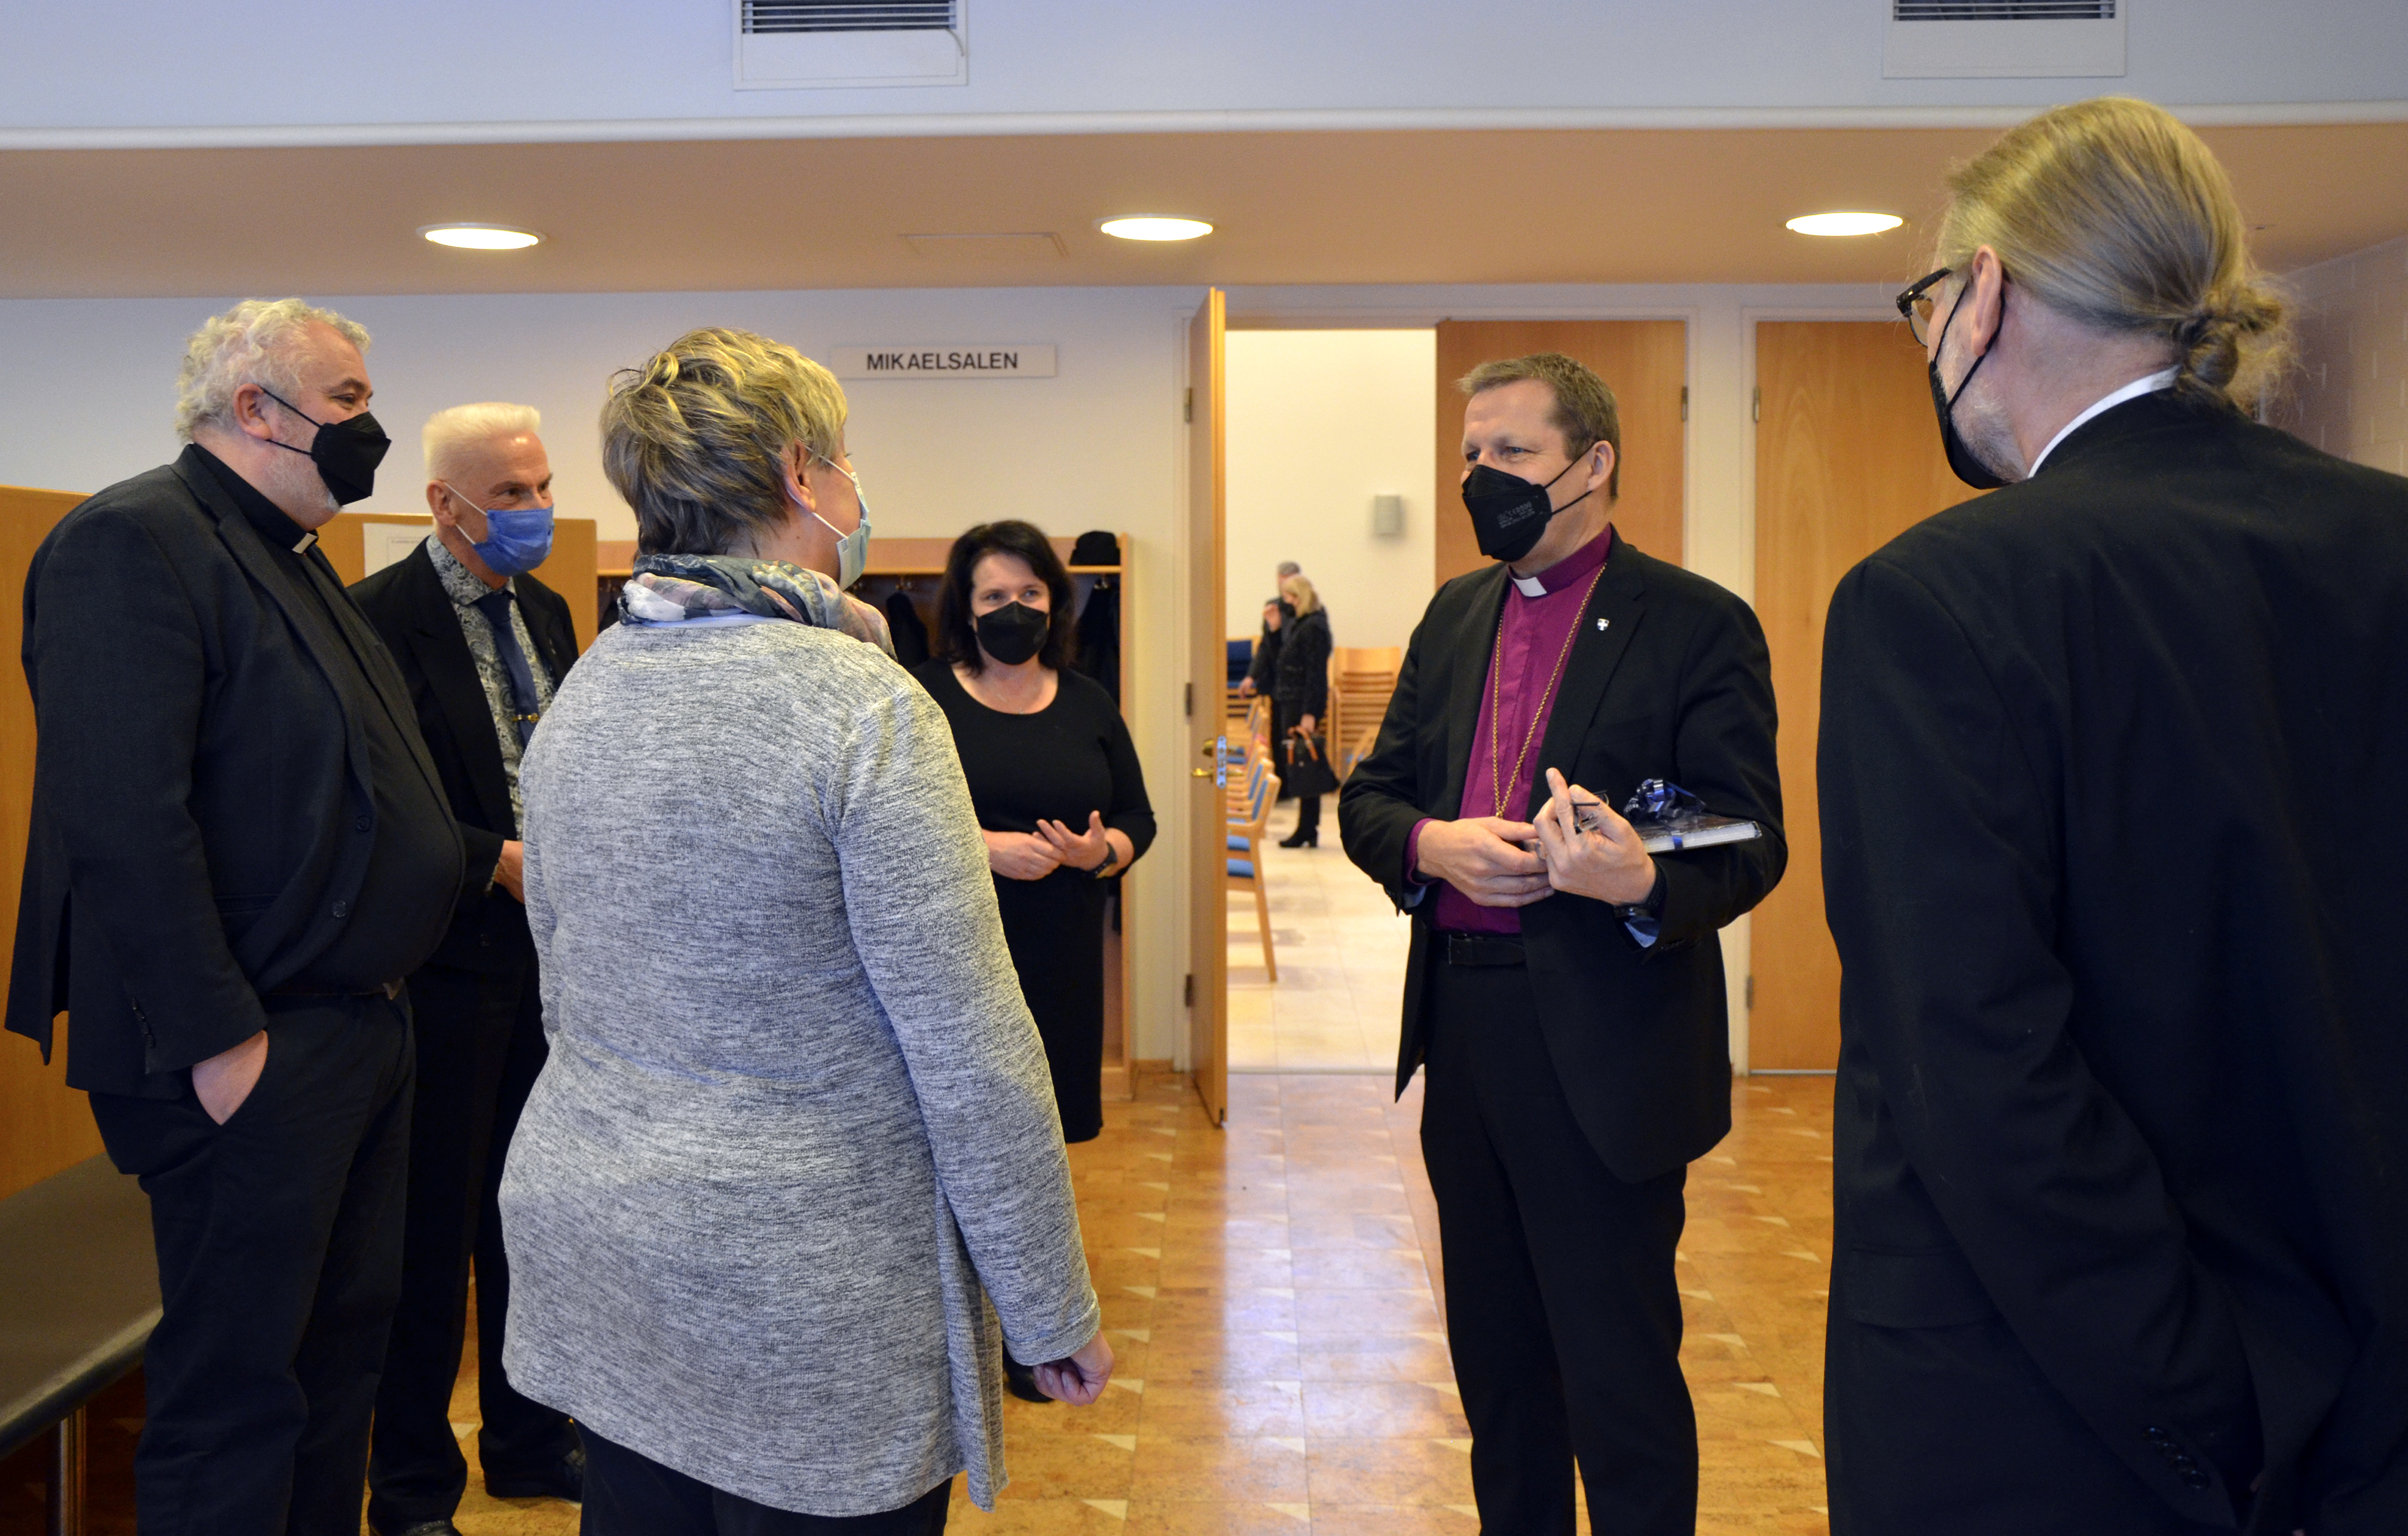 Piispa Jukka Keskitalo kiittää Kokkolan kaupunginjohtaja Stina Mattilaa kaupungin tervehdyksestä.